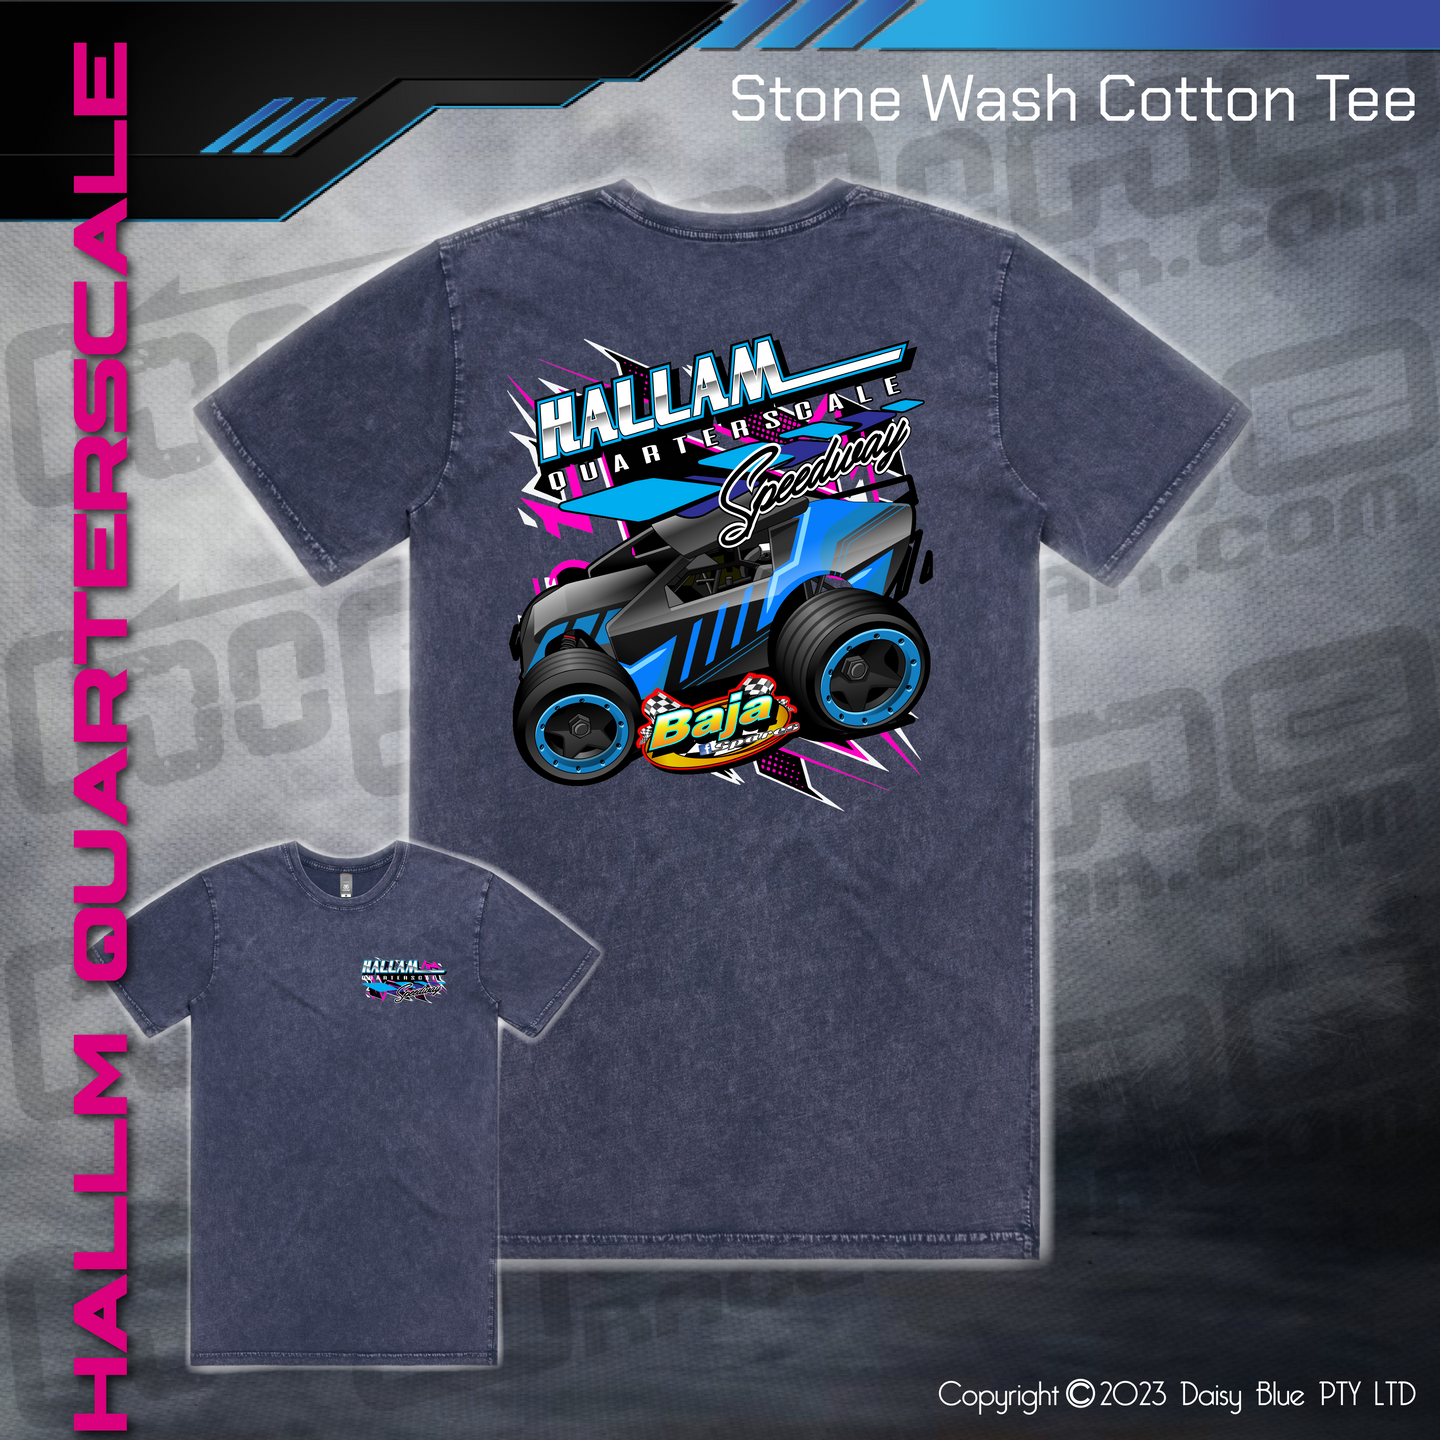 Stonewash Tee - Hallam Quarterscale Speedway